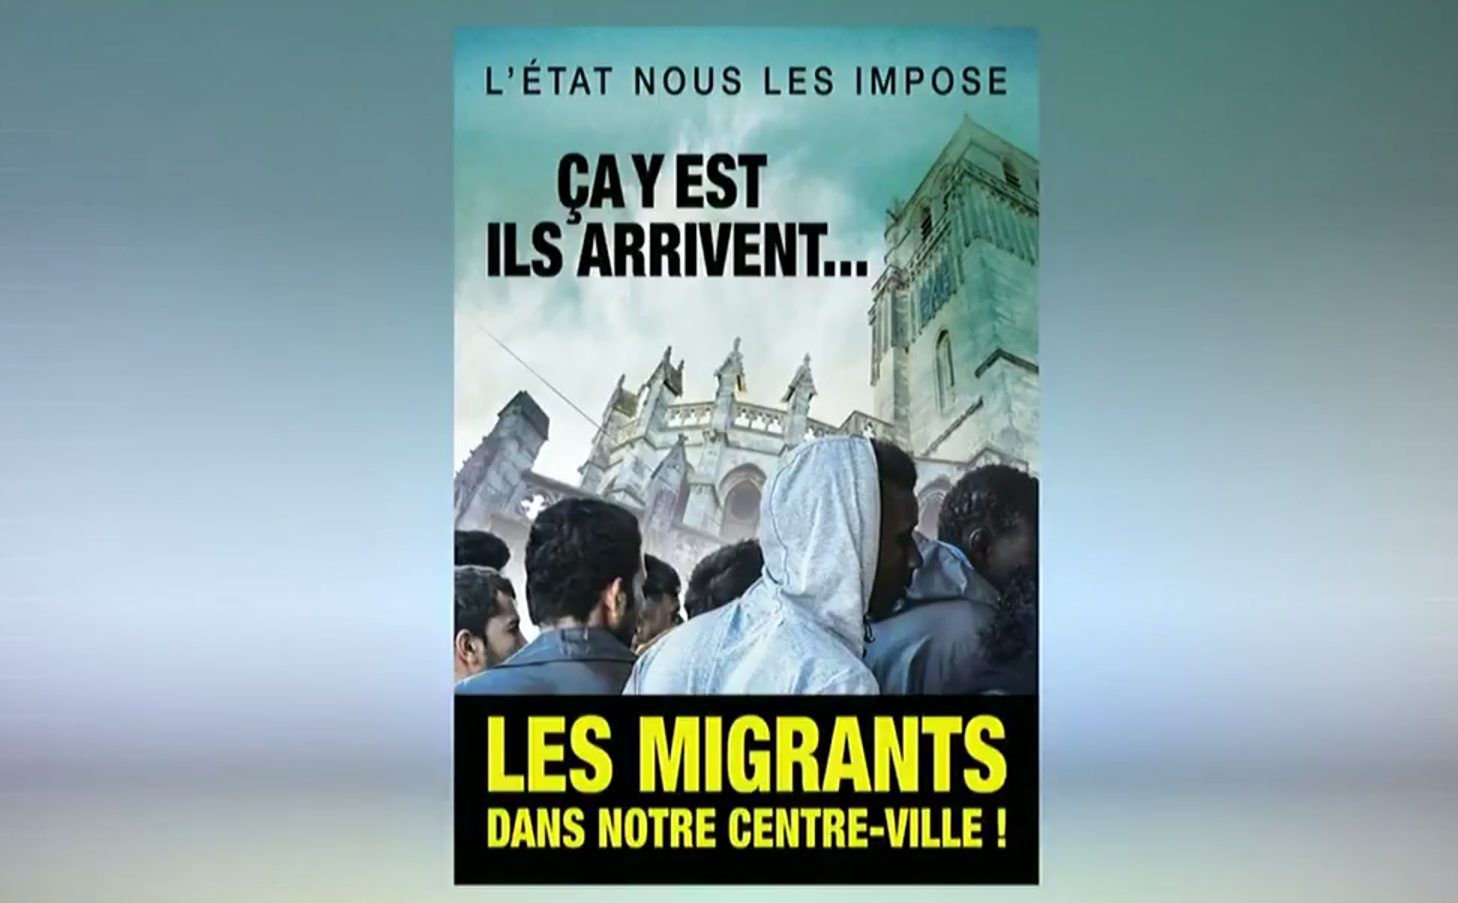 Les affiches comparent les migrants à des envahisseurs.